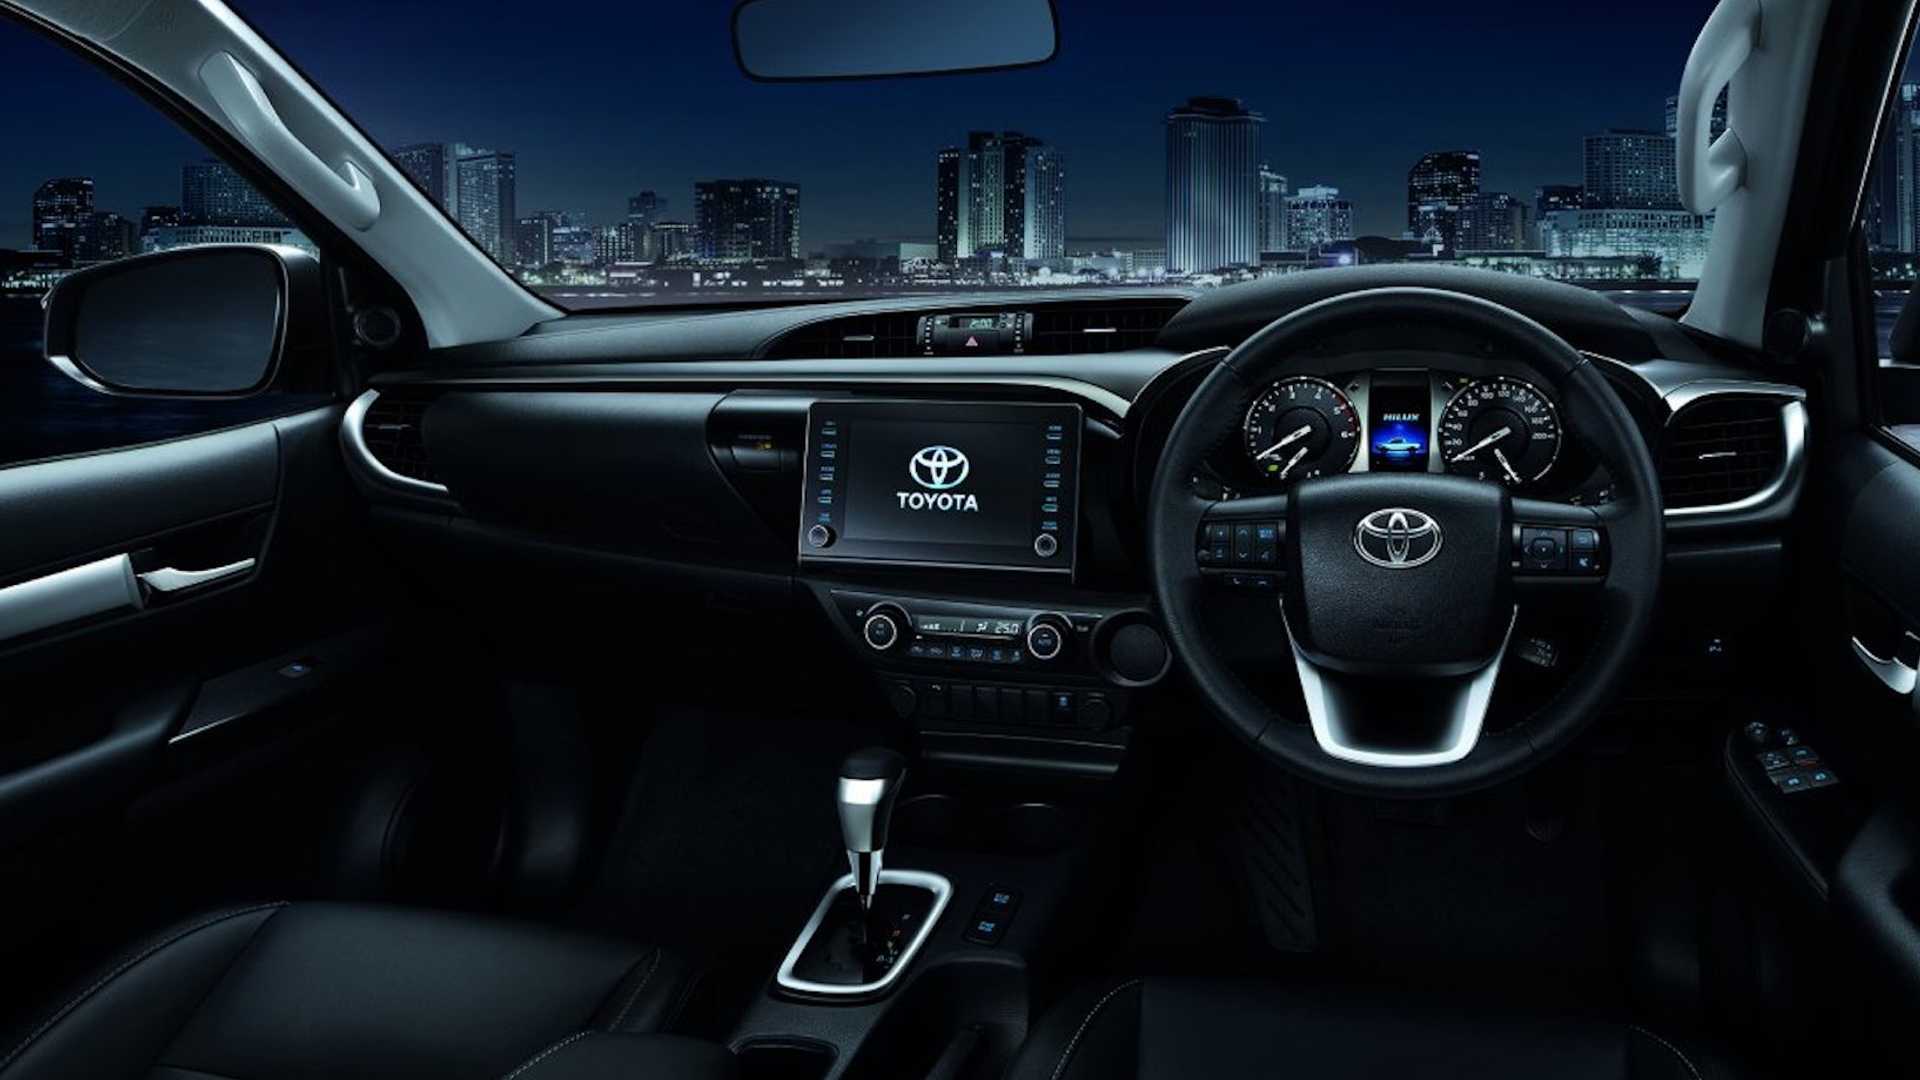 hình nền xe hơi toyota: Chọn hình nền xe hơi Toyota cho máy tính của bạn để thể hiện đam mê và sự yêu thích với thương hiệu này. Từ mẫu xe cao cấp như Lexus đến các mẫu xe gầm cao, động cơ khỏe, Toyota luôn mang đến sự phong phú và độc đáo từng dòng xe. Hãy xem ngay hình ảnh để tìm kiếm bức ảnh phù hợp cho màn hình của bạn.